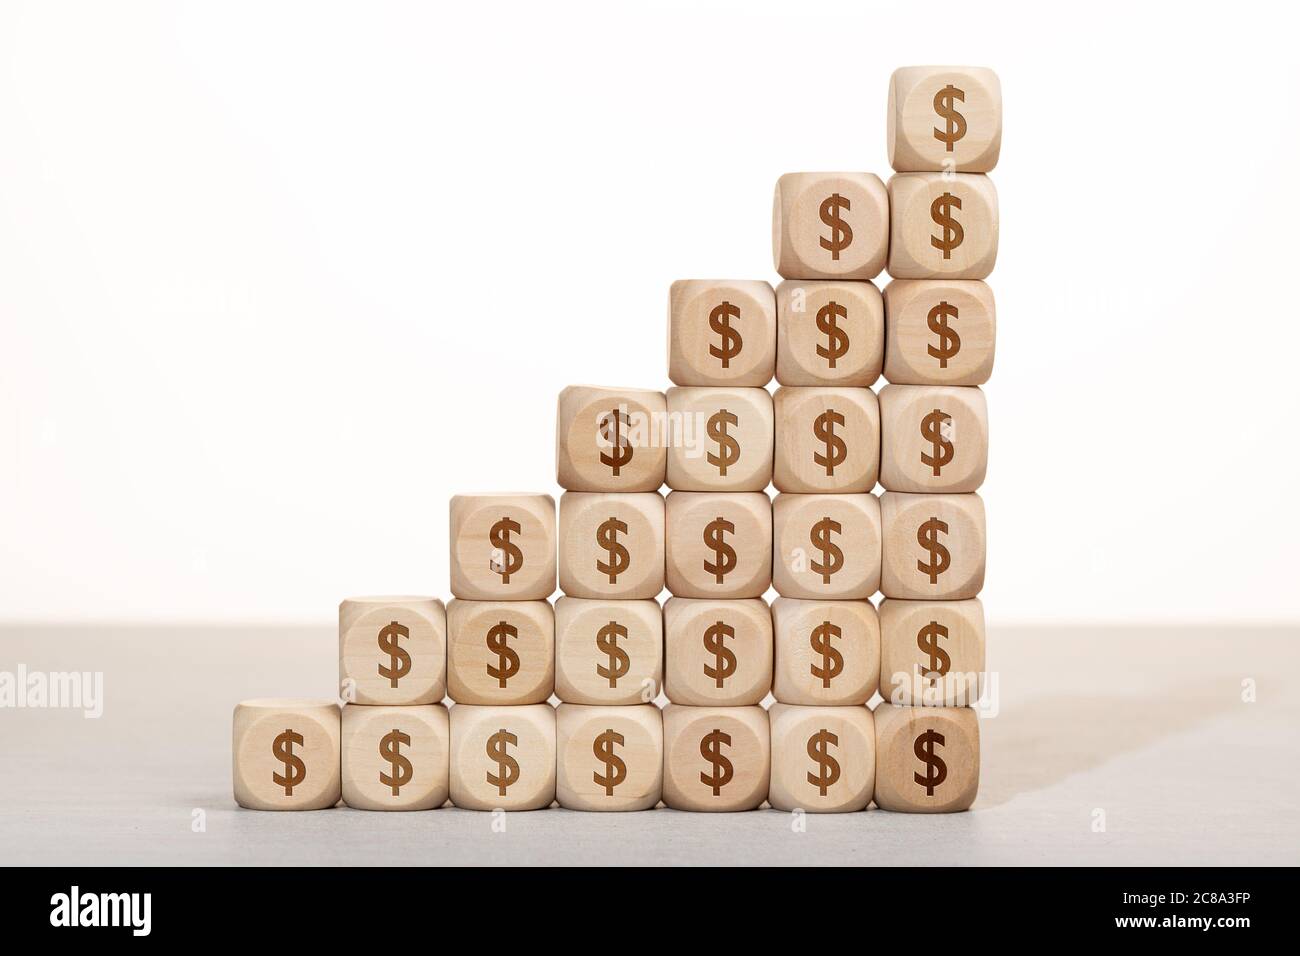 Wachstum, Reichtum oder Reichtum Konzept. Gruppe von Holzblöcken mit Dollar-Symbol gestapelt Stockfoto